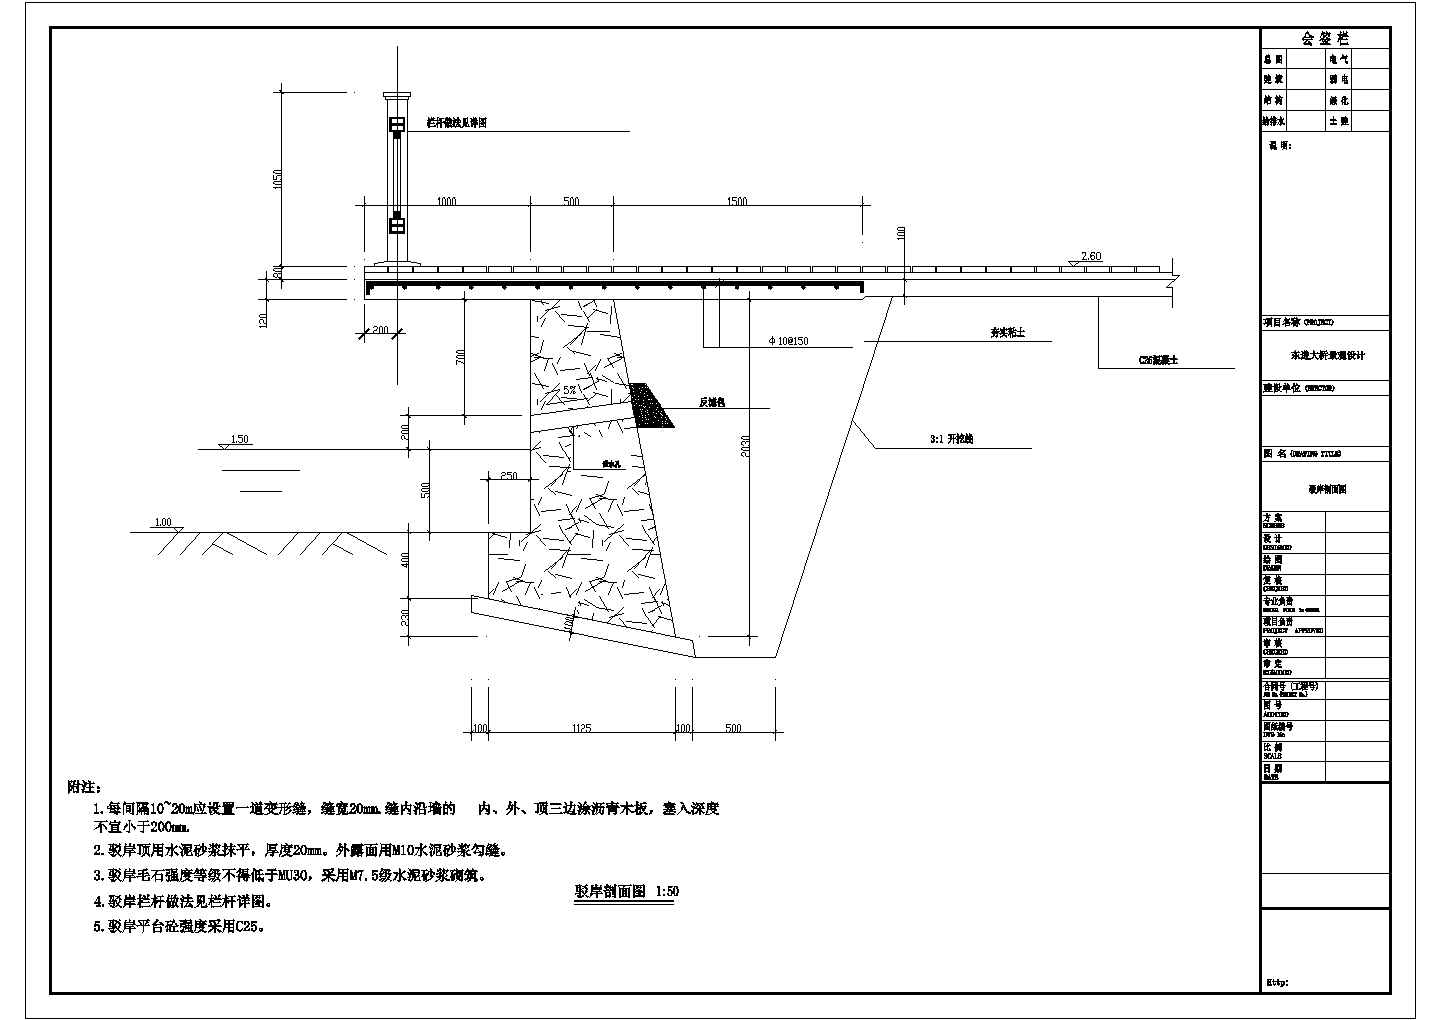 某桥头公园CAD设计详细完整施工图驳岸